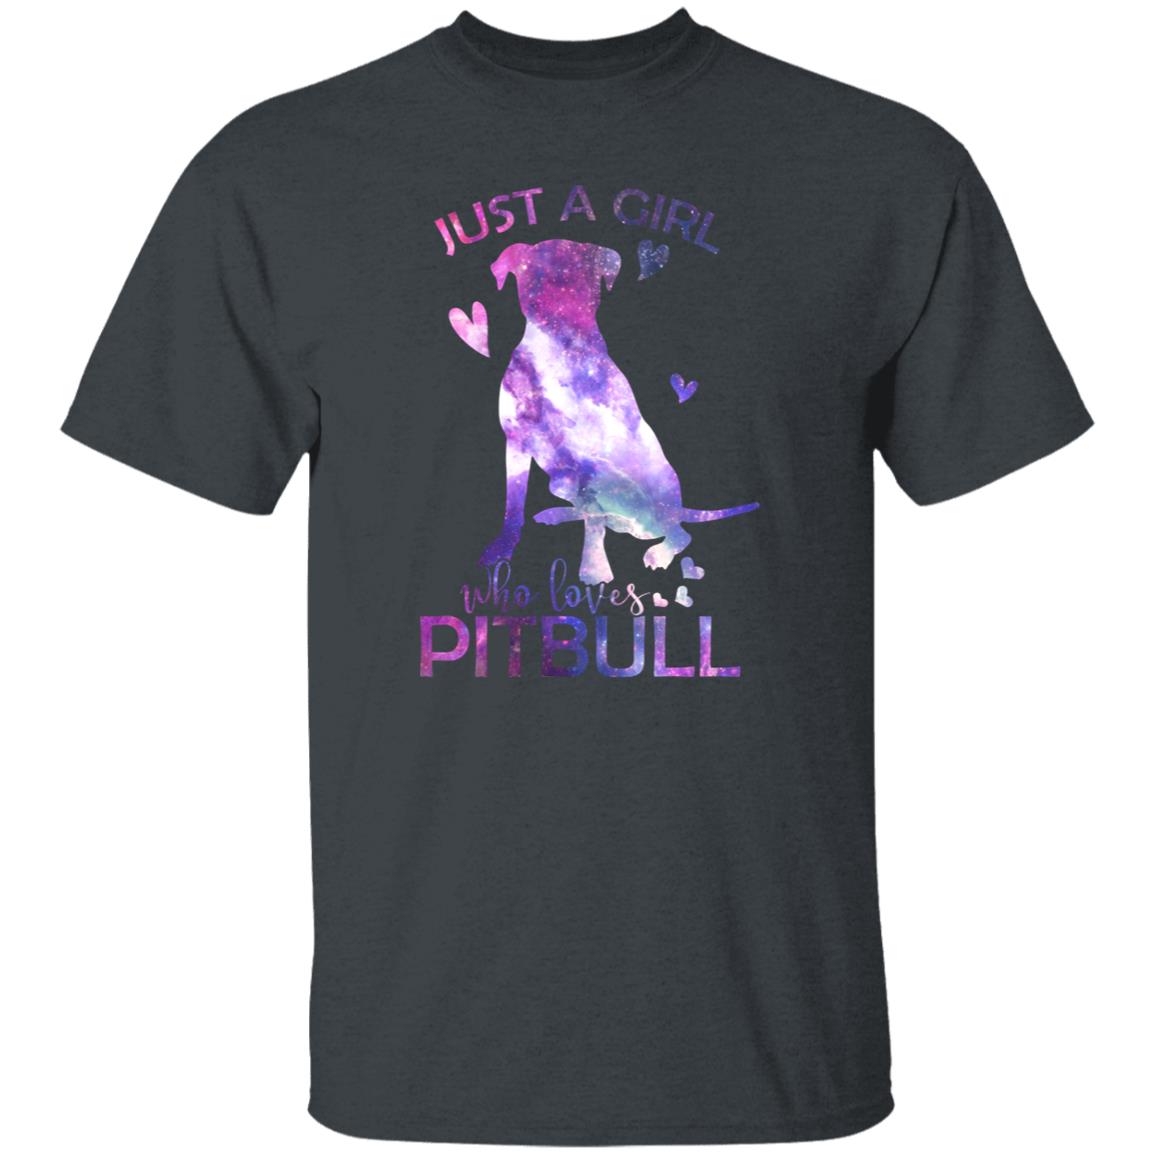 Just a girl who loves Pitbull T-Shirt gift Pitbull Dog mom Unisex tee Black Navy Dark Heather-Family-Gift-Planet